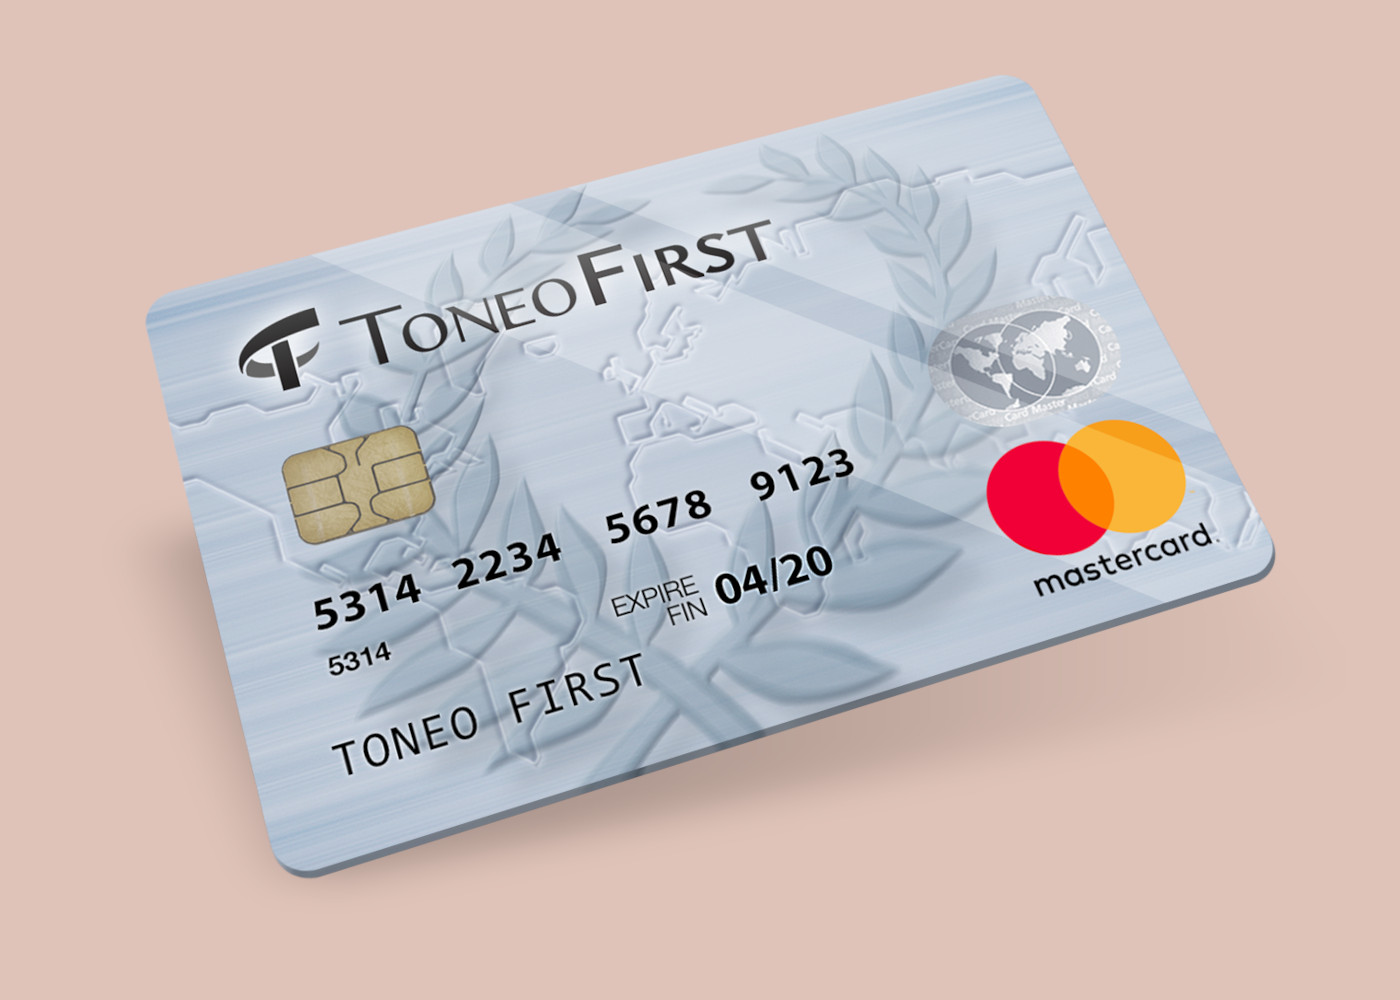 Toneo First Mastercard €7,5 Gift Card EU